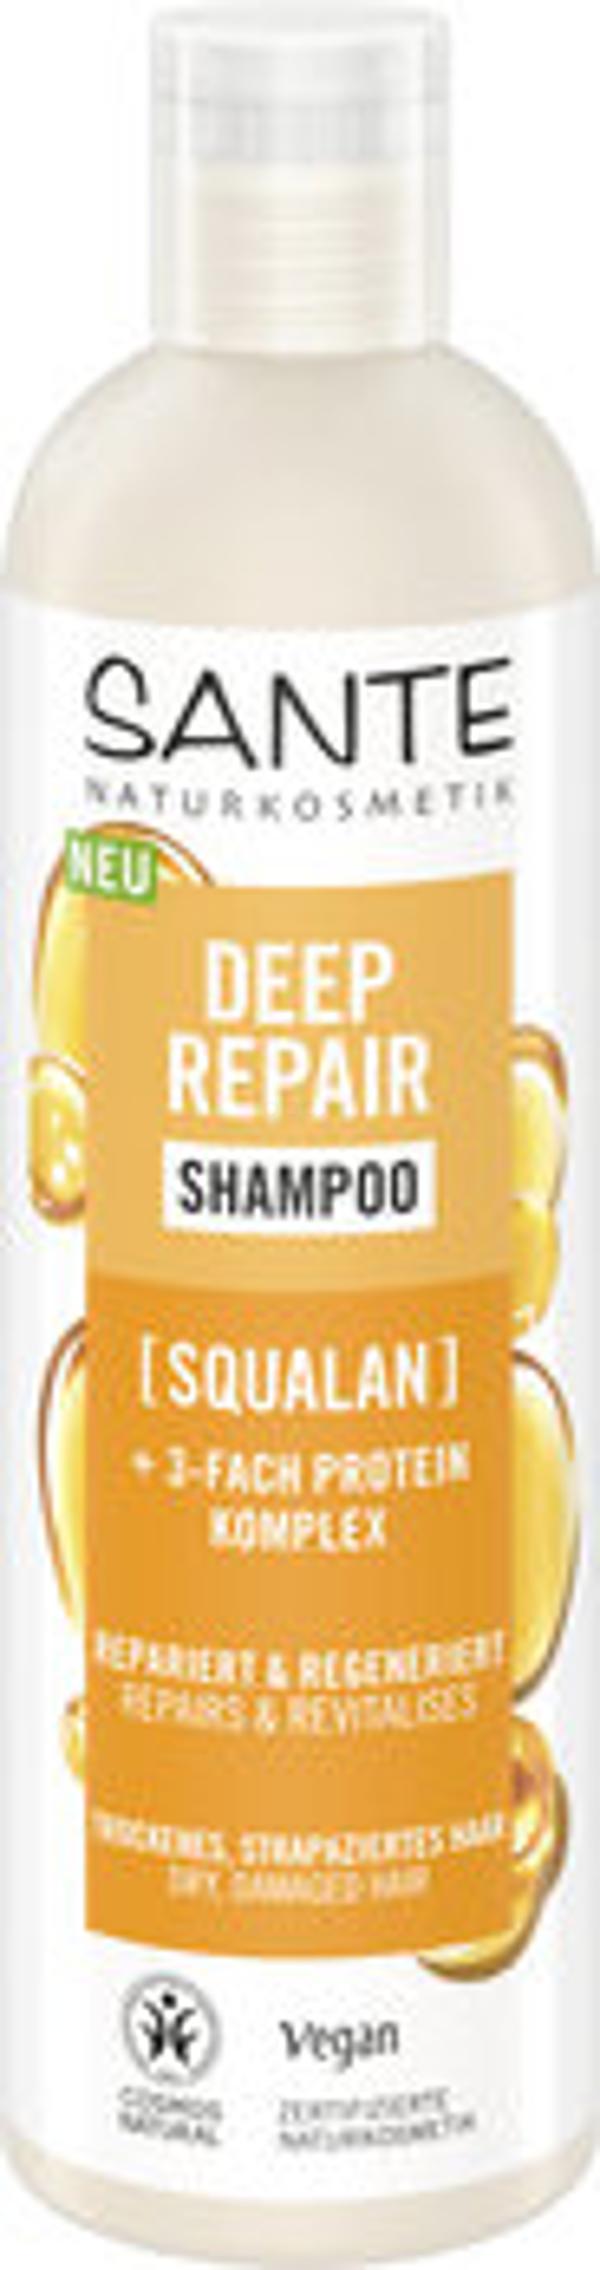 Produktfoto zu Deep Repair Shampoo Squalan 250ml